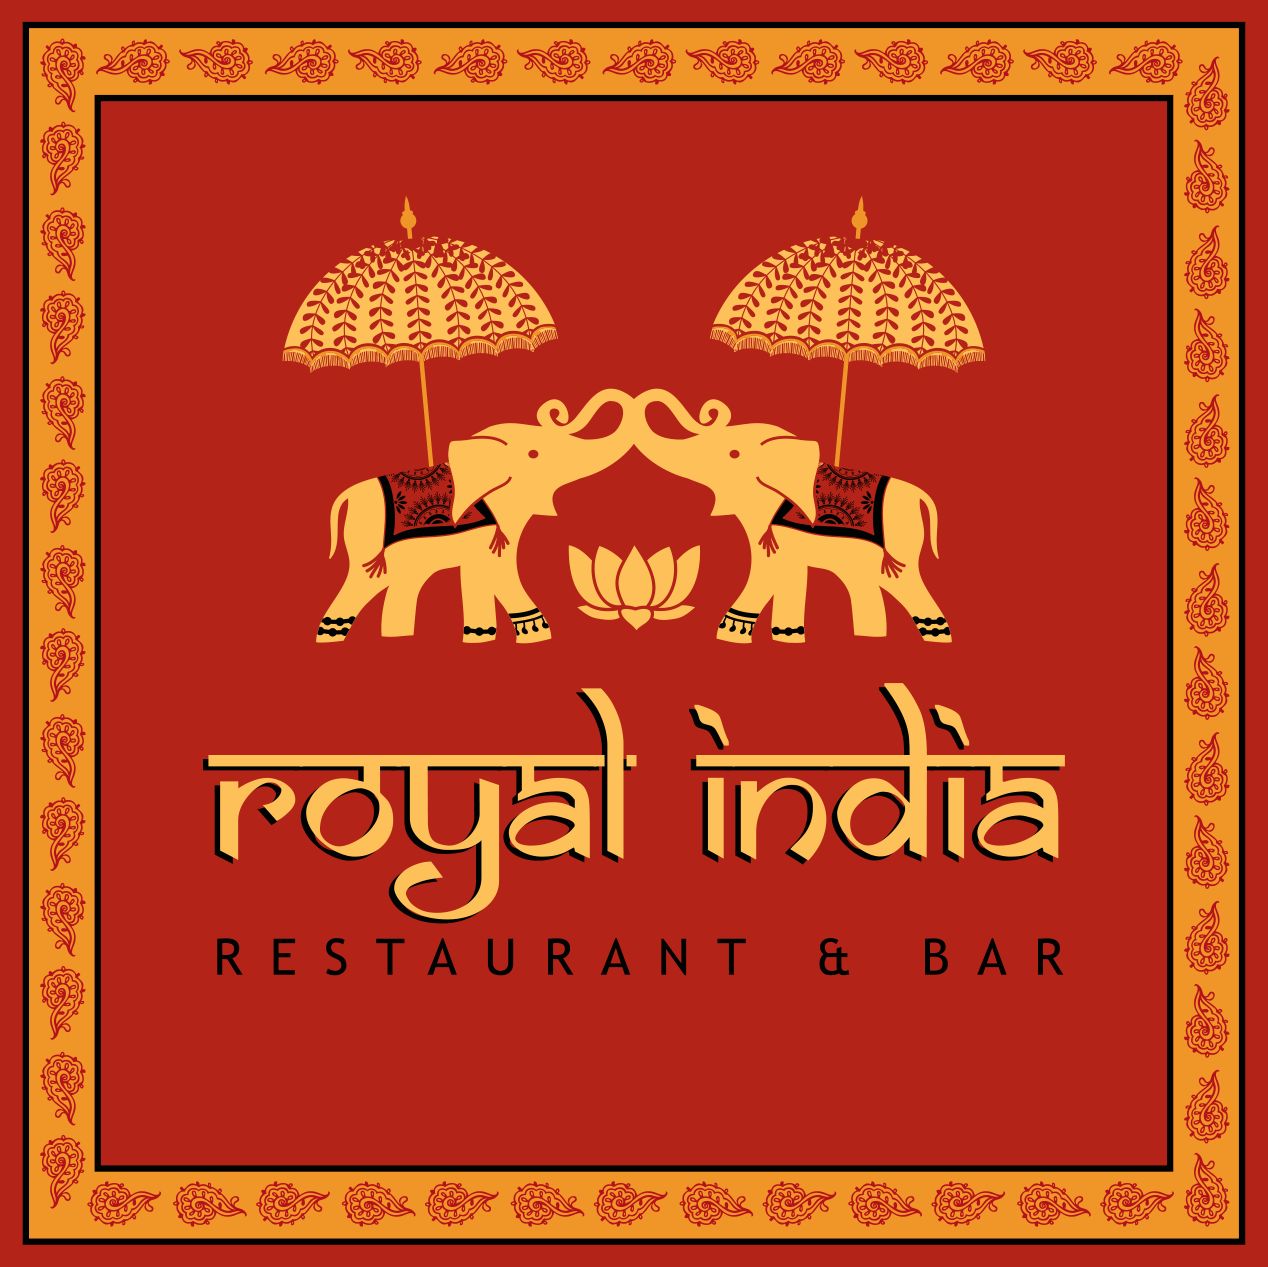  Royal India